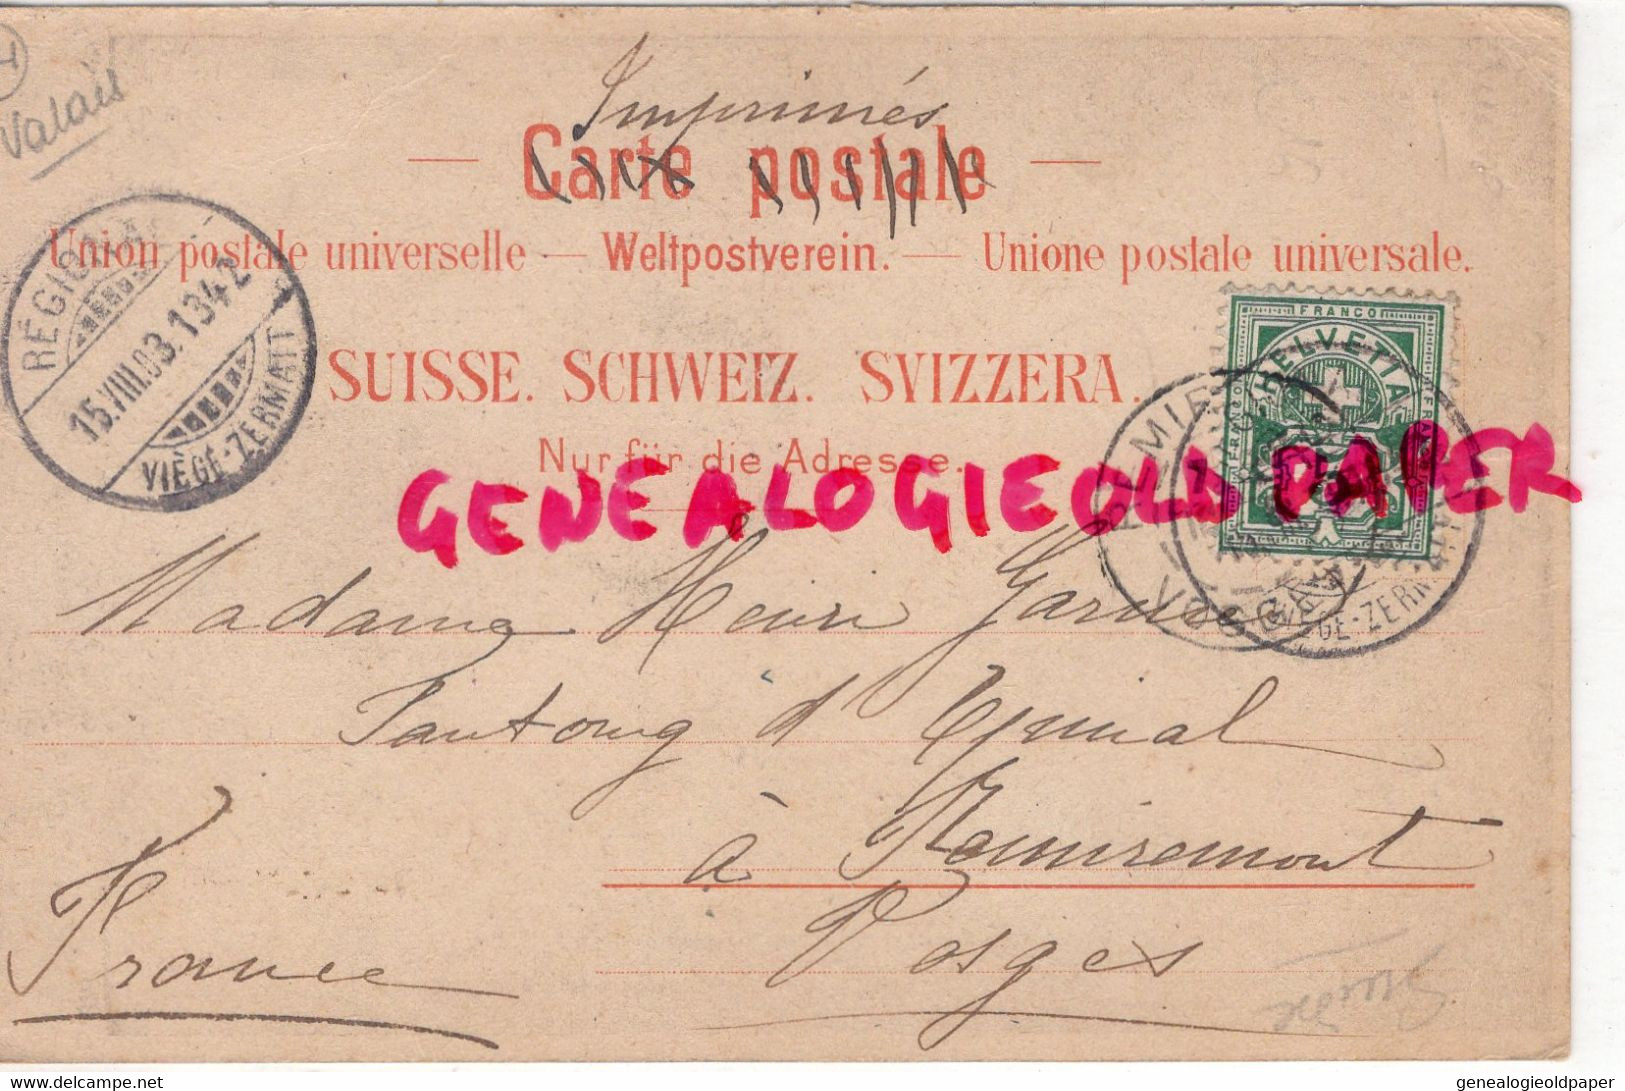 SUISSE - ZERMATT - GORNERSCHLUCHT -VALAIS-CARTE PRECURSEUR 1903- EDITEUR ANSTALT BRUGGER MEIRINGEN - Saint-Luc